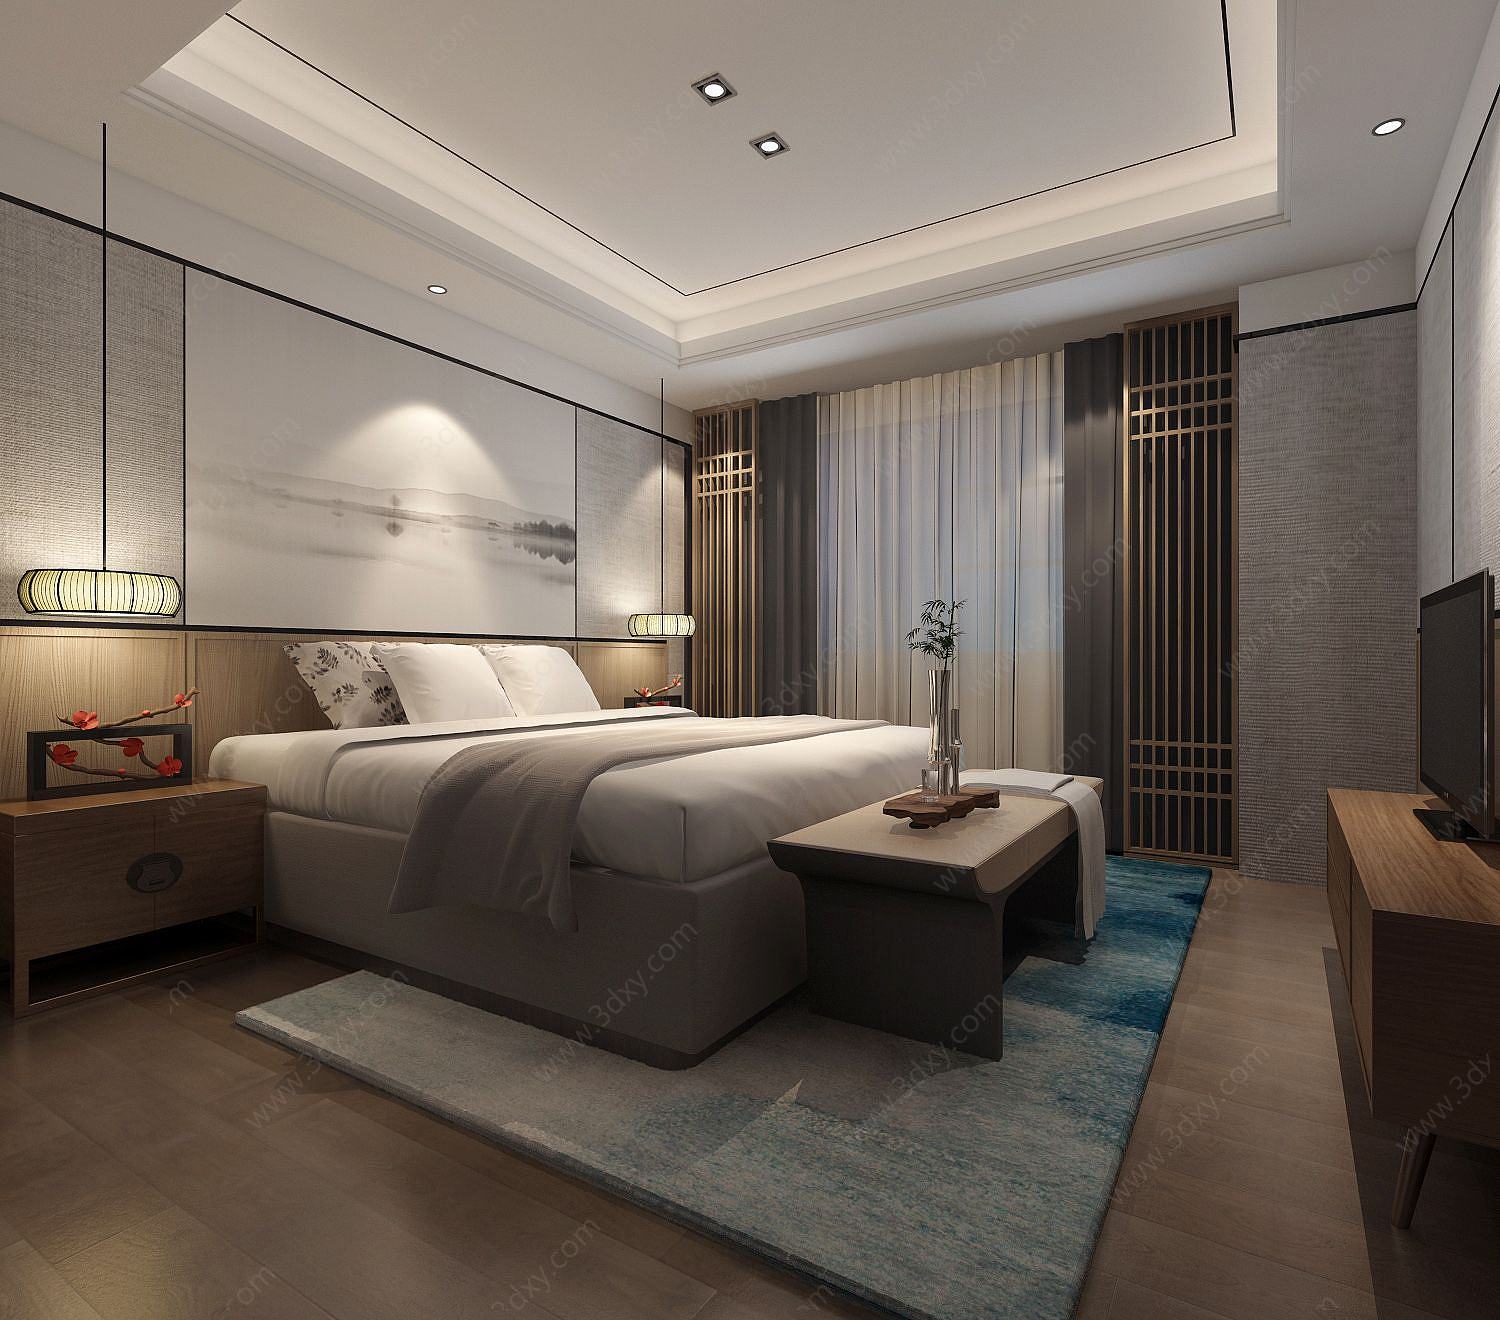 中式古木色床沙发组合卧室3D模型